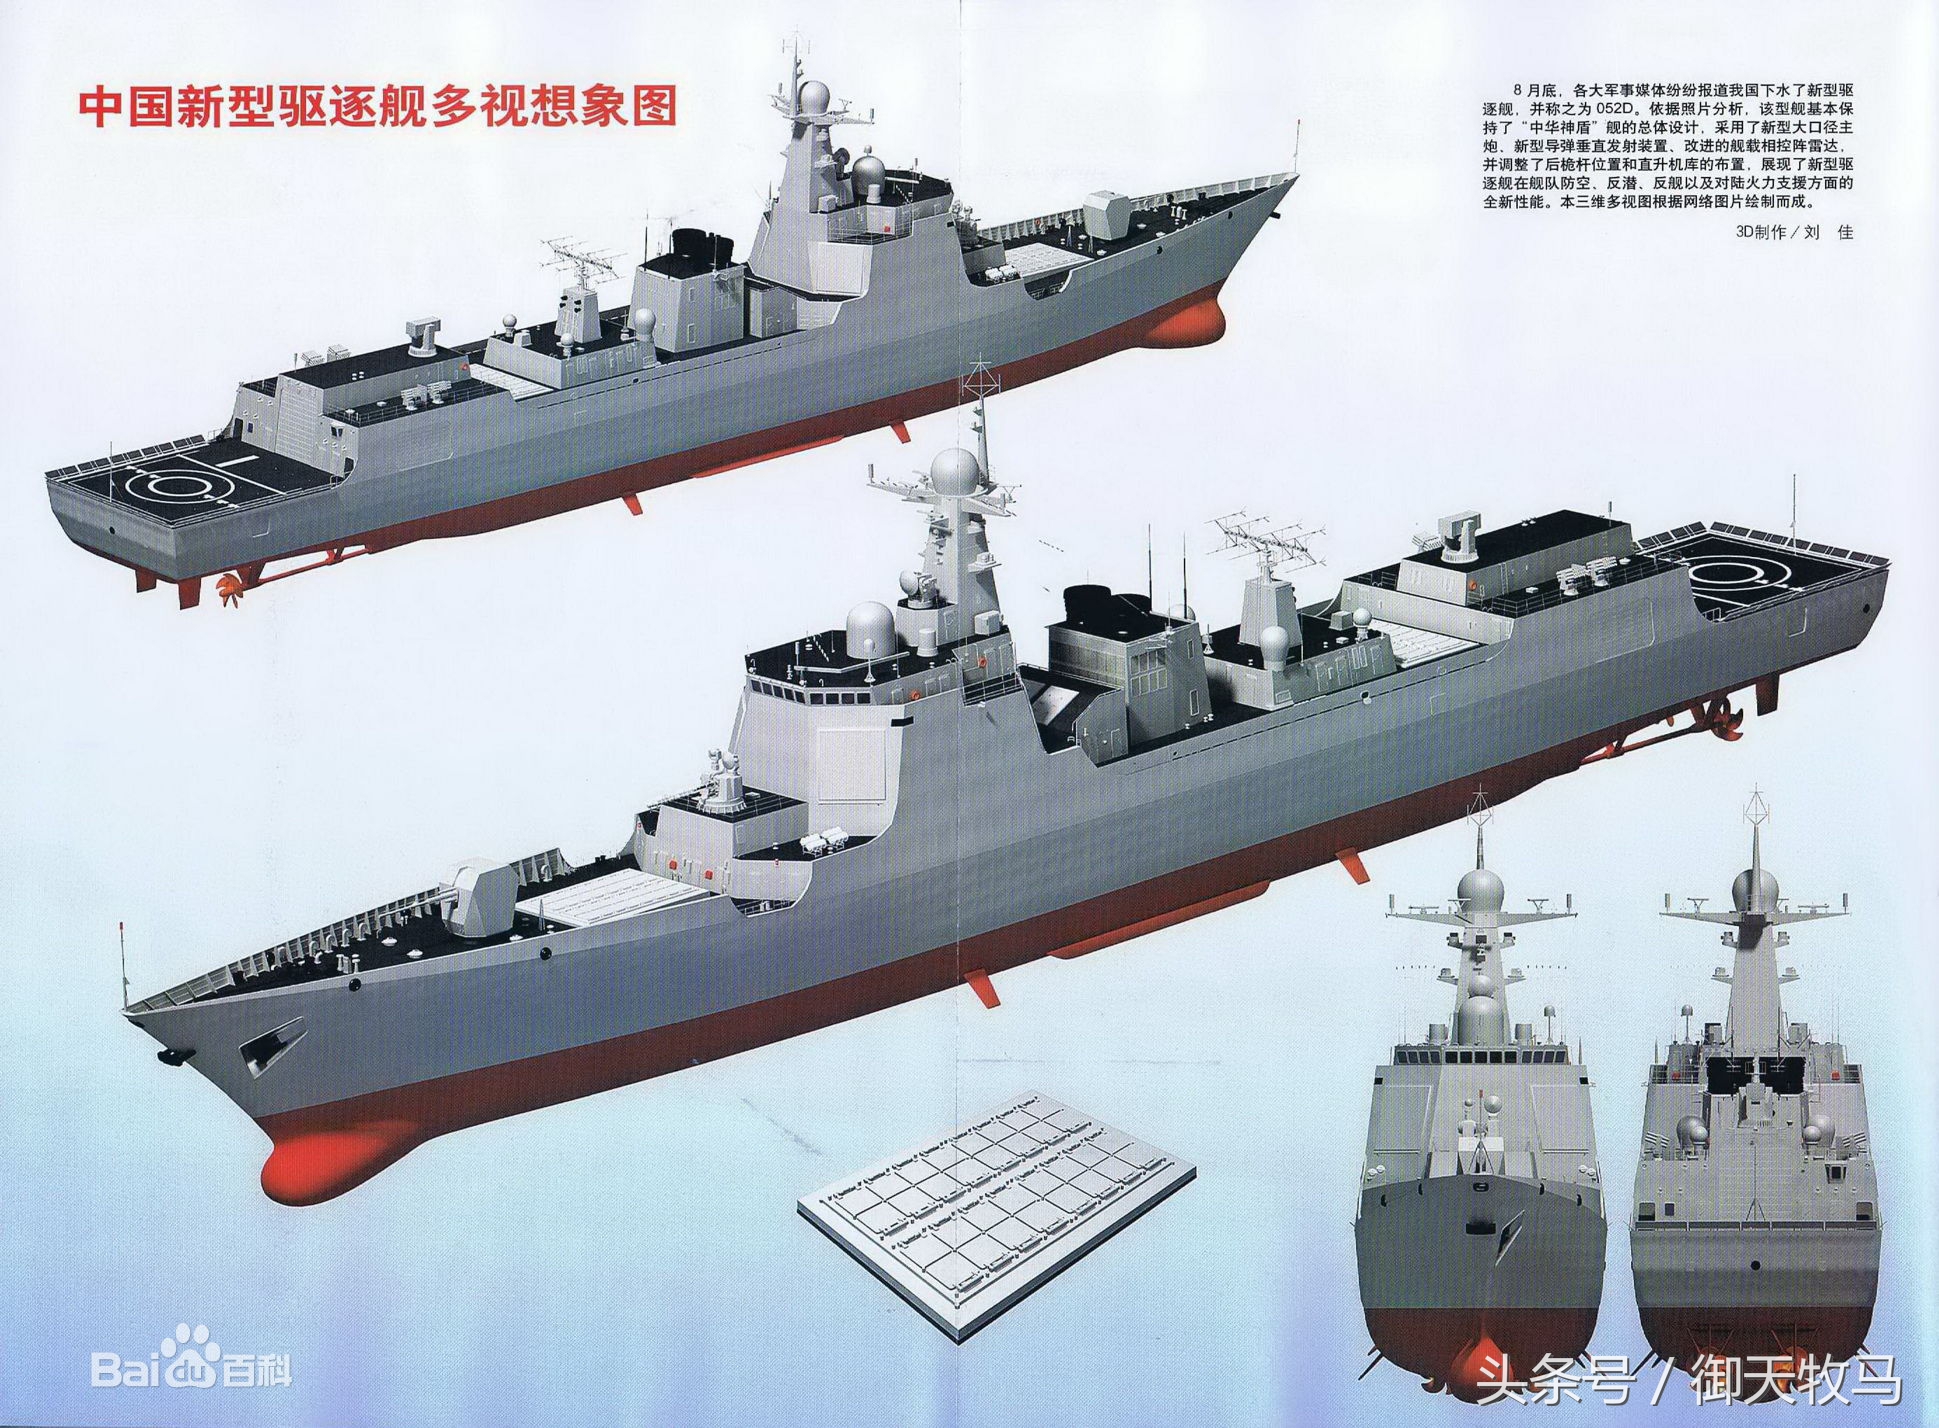 居安思危:光速造舰背后中国驱逐舰紧缺的现状